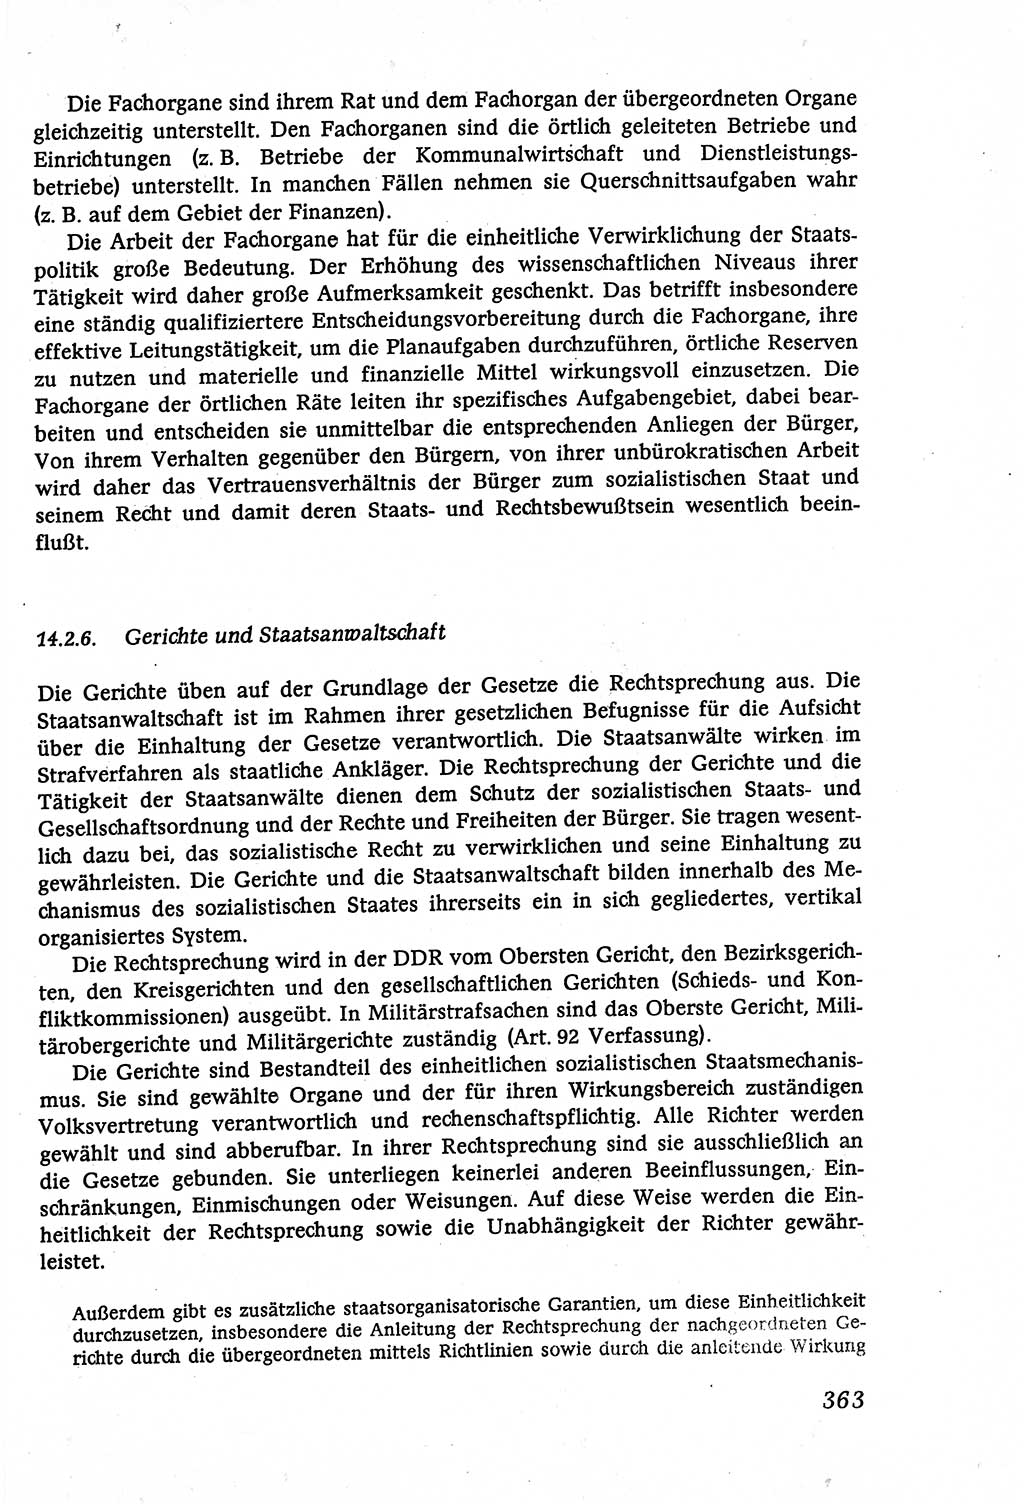 Marxistisch-leninistische (ML) Staats- und Rechtstheorie [Deutsche Demokratische Republik (DDR)], Lehrbuch 1980, Seite 363 (ML St.-R.-Th. DDR Lb. 1980, S. 363)